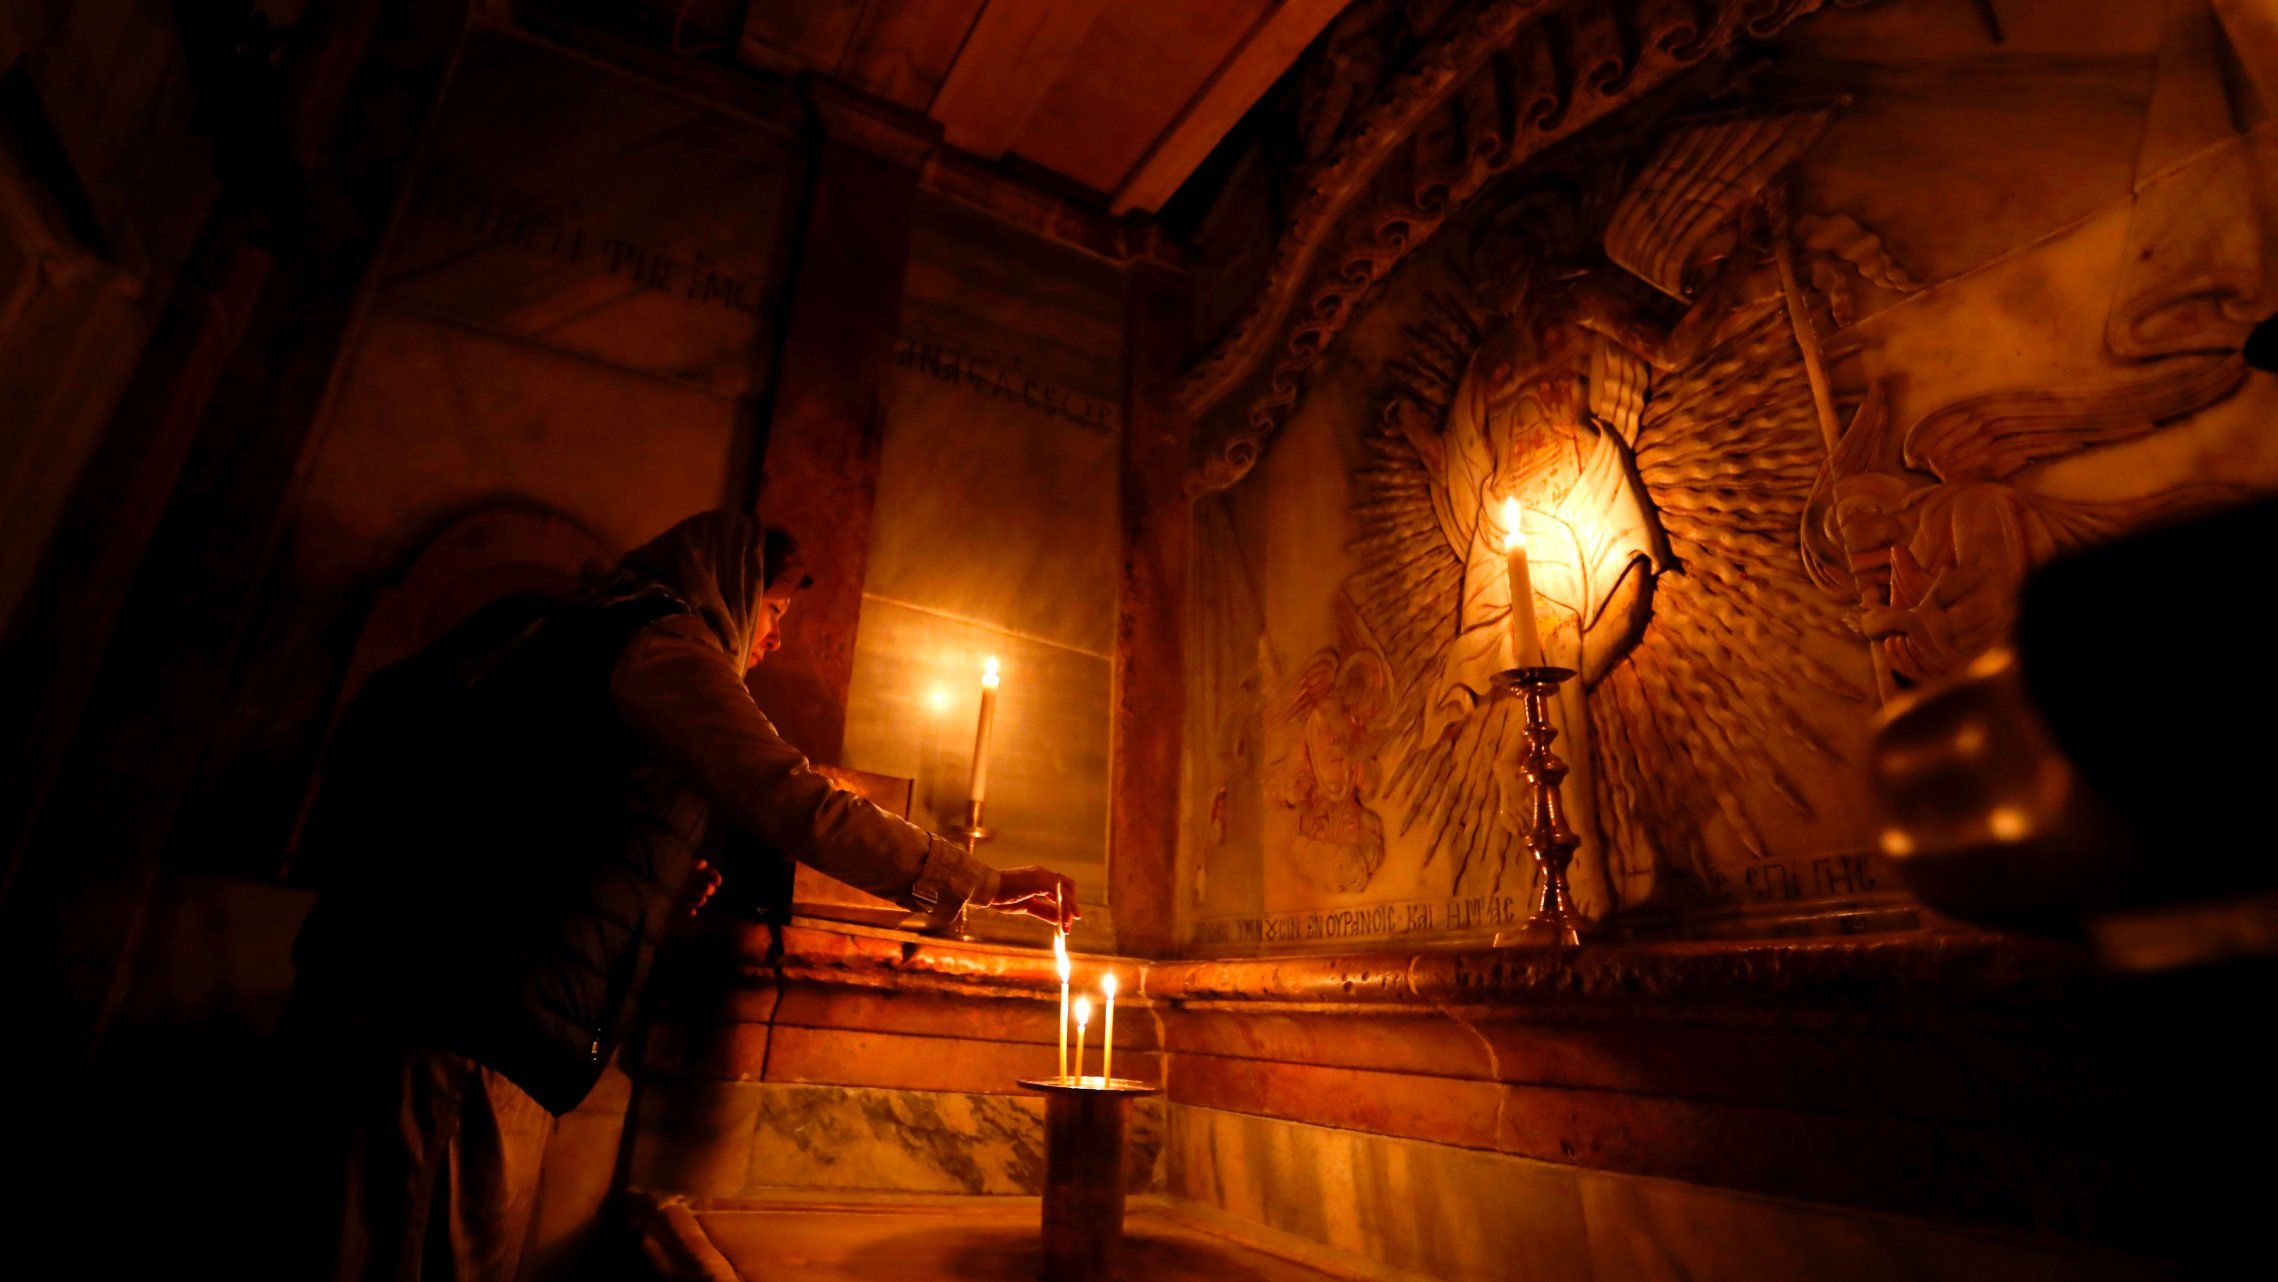 Site of Jesus' tomb in Jerusalem reopens after restoration